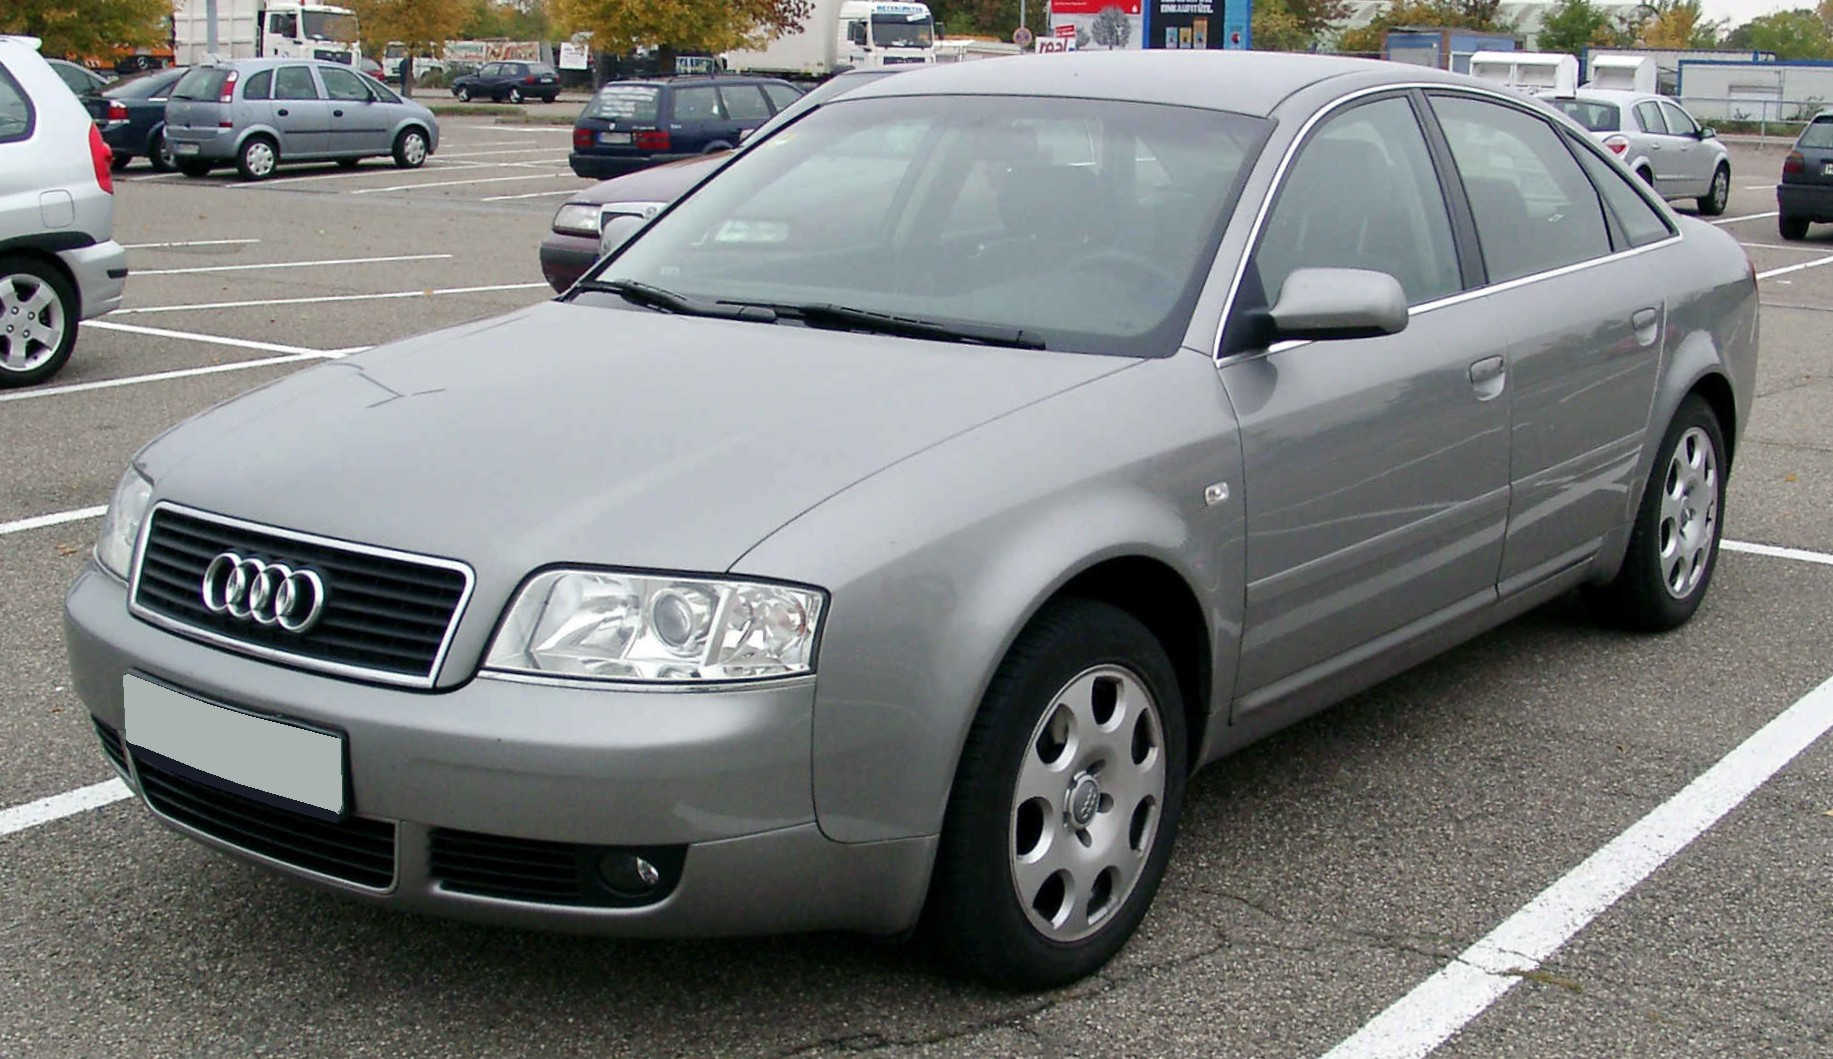 Audi_A6_C5_front_20081009